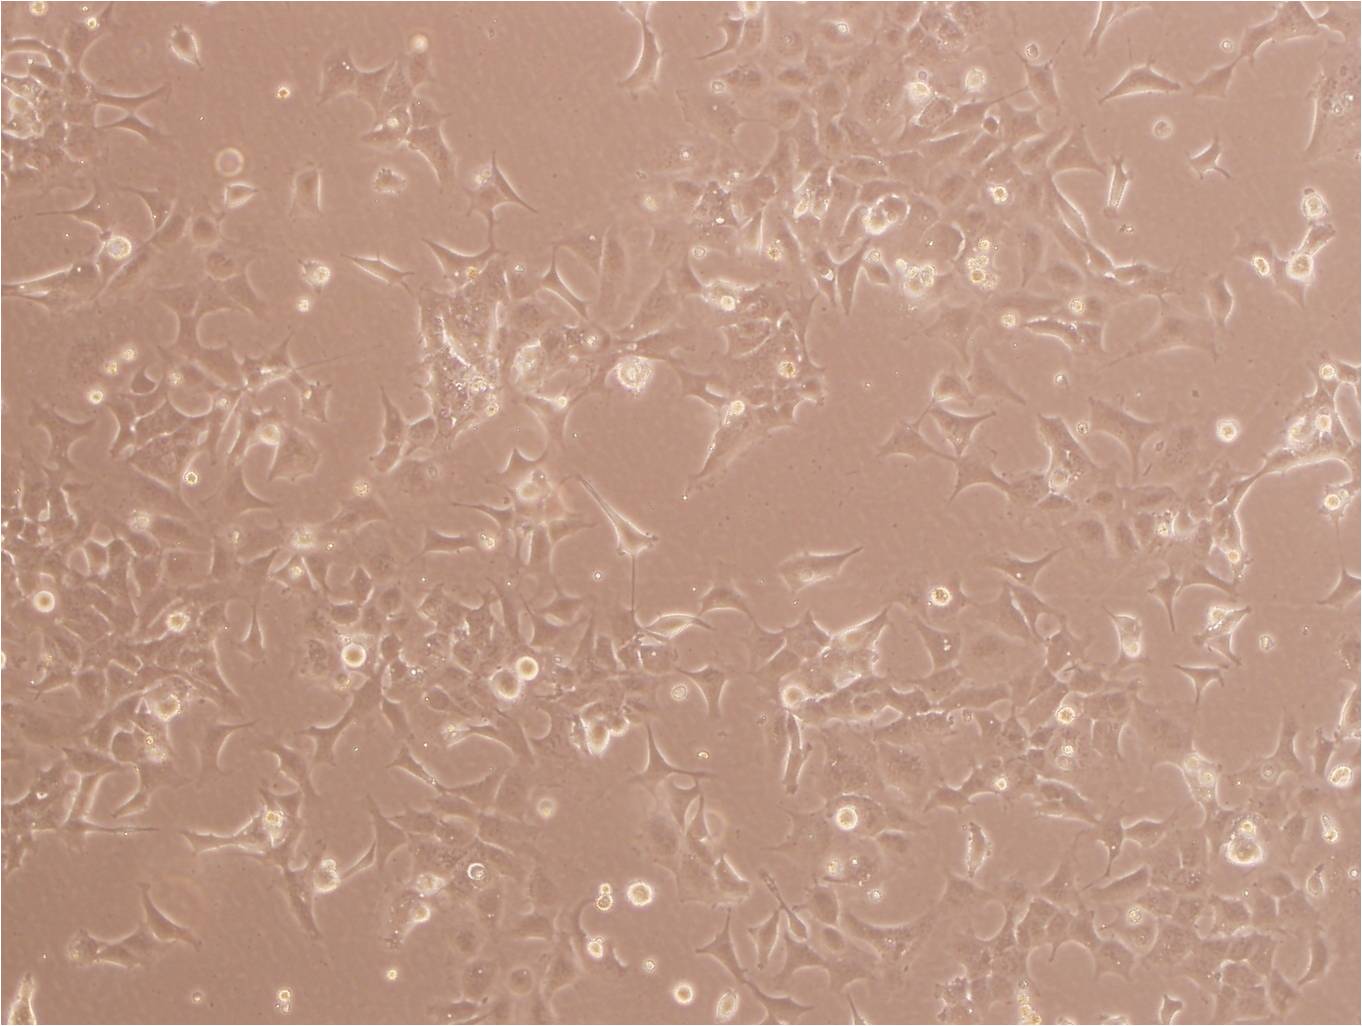 A-204 Cell:人横纹肌肉瘤细胞系